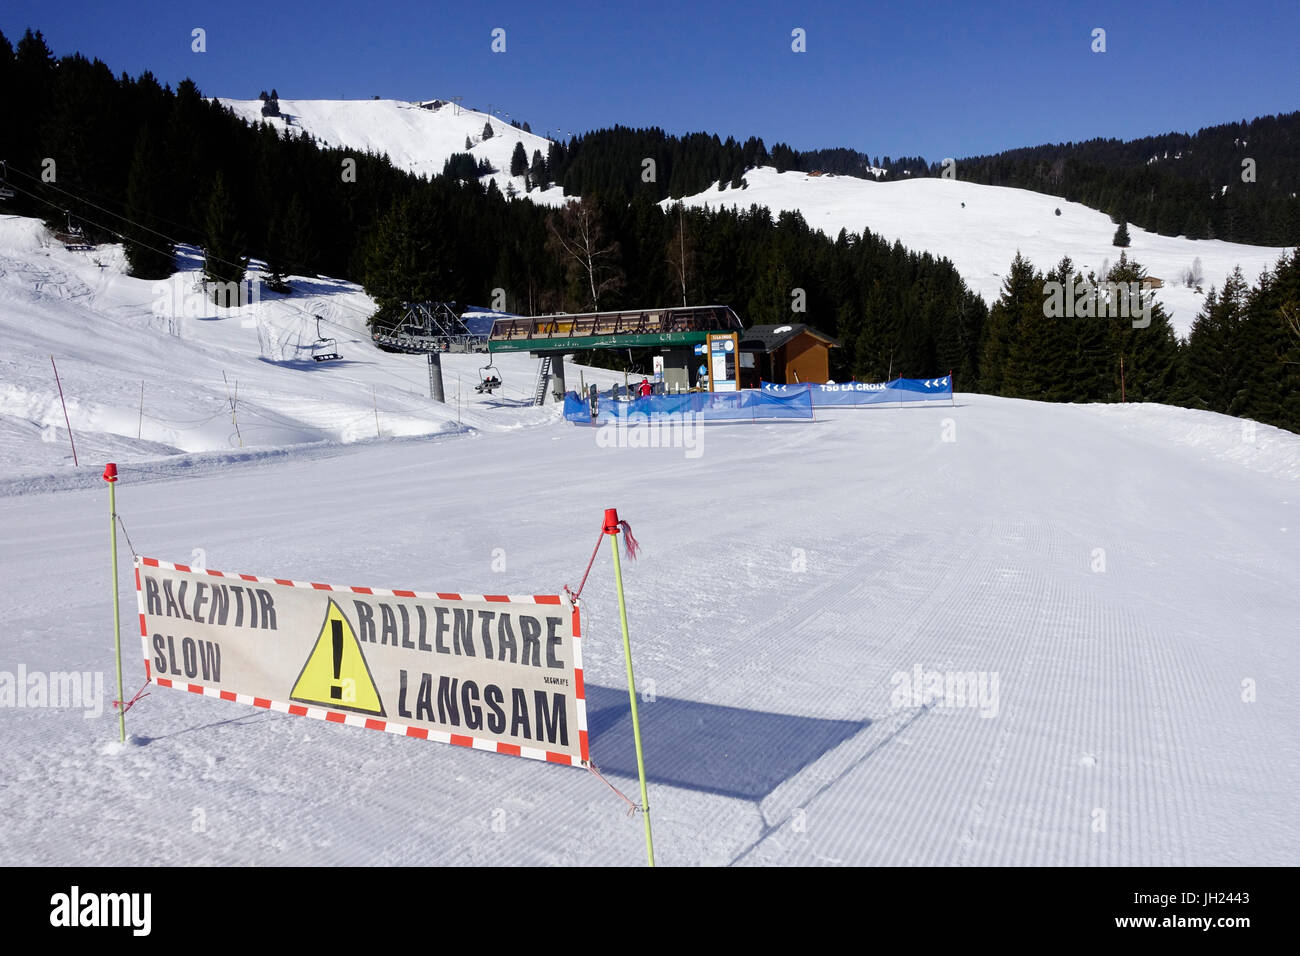 Alpes françaises. Les skieurs lents signe. Une piste de ski. La France. Banque D'Images